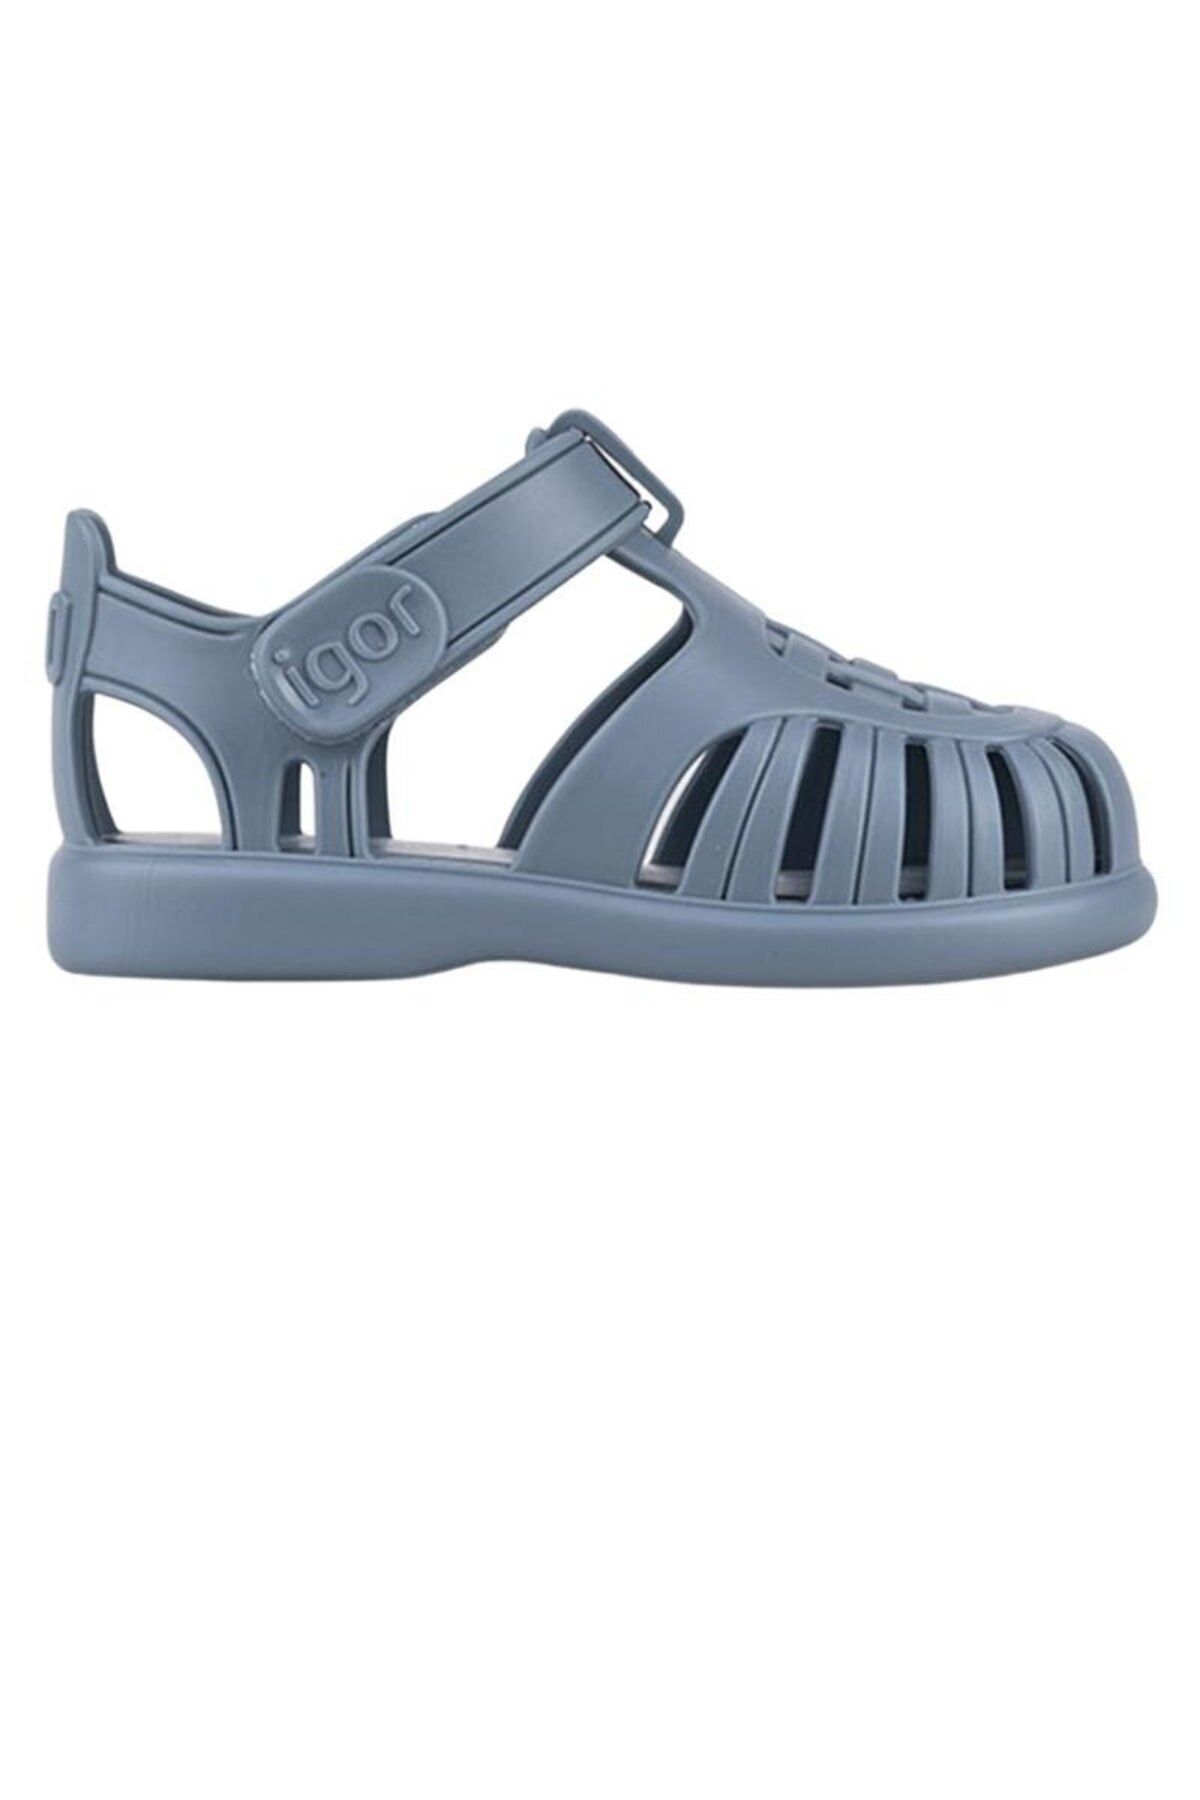 IGOR Unisex Çocuk Sandalet S10271-010